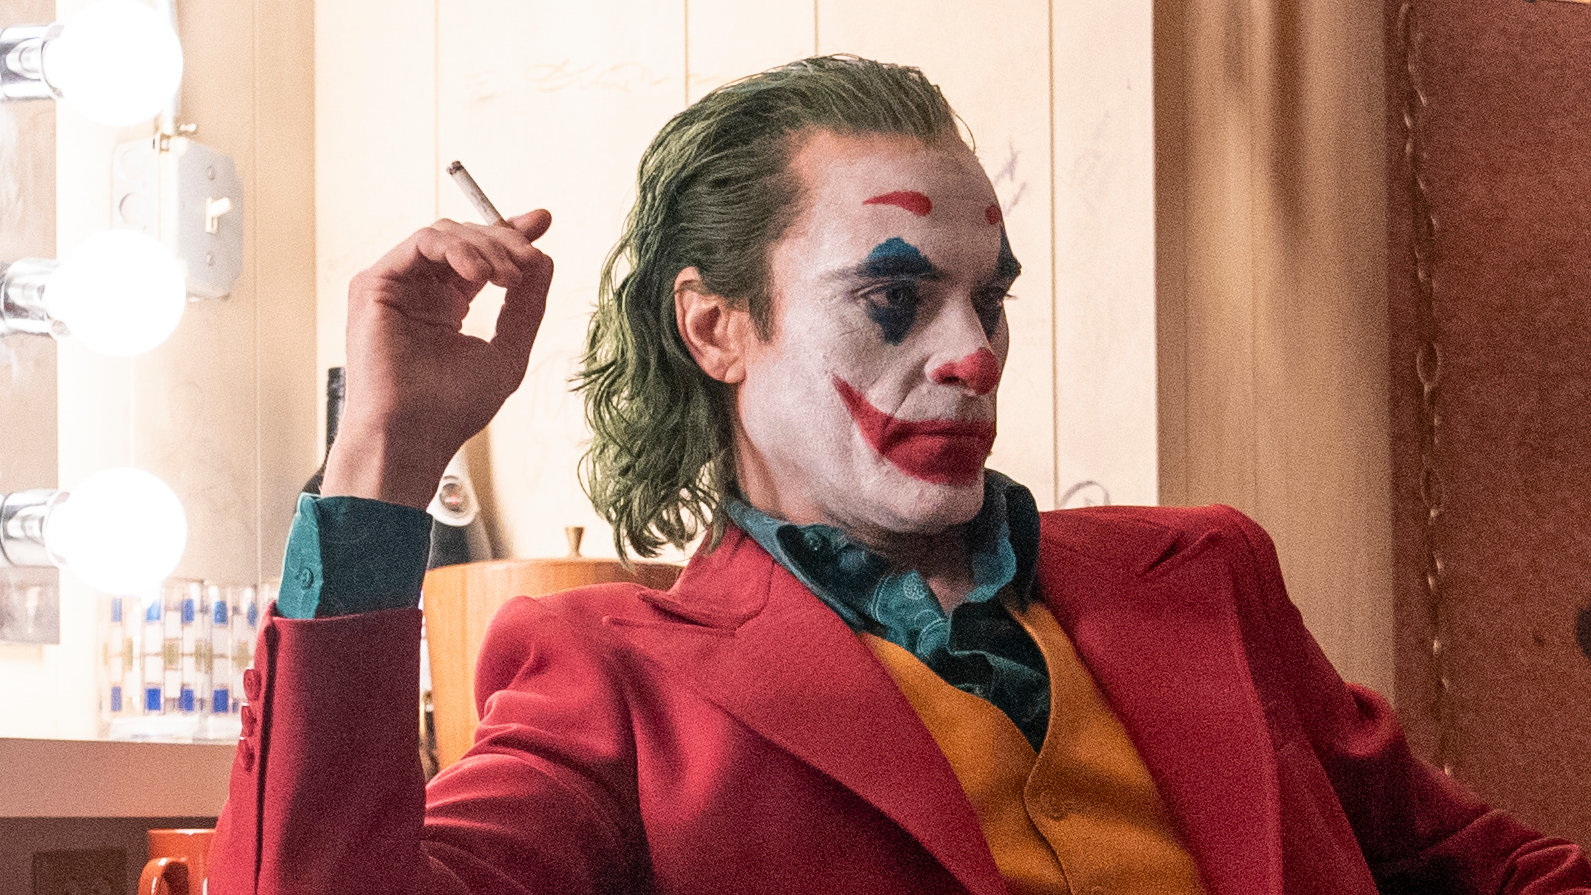 วาคีน ฟินิกซ์ พร้อมกลับมาเล่นบท Joker อีกครั้ง หากมีภาคต่อ – Thailand Box  Office And Entertainment